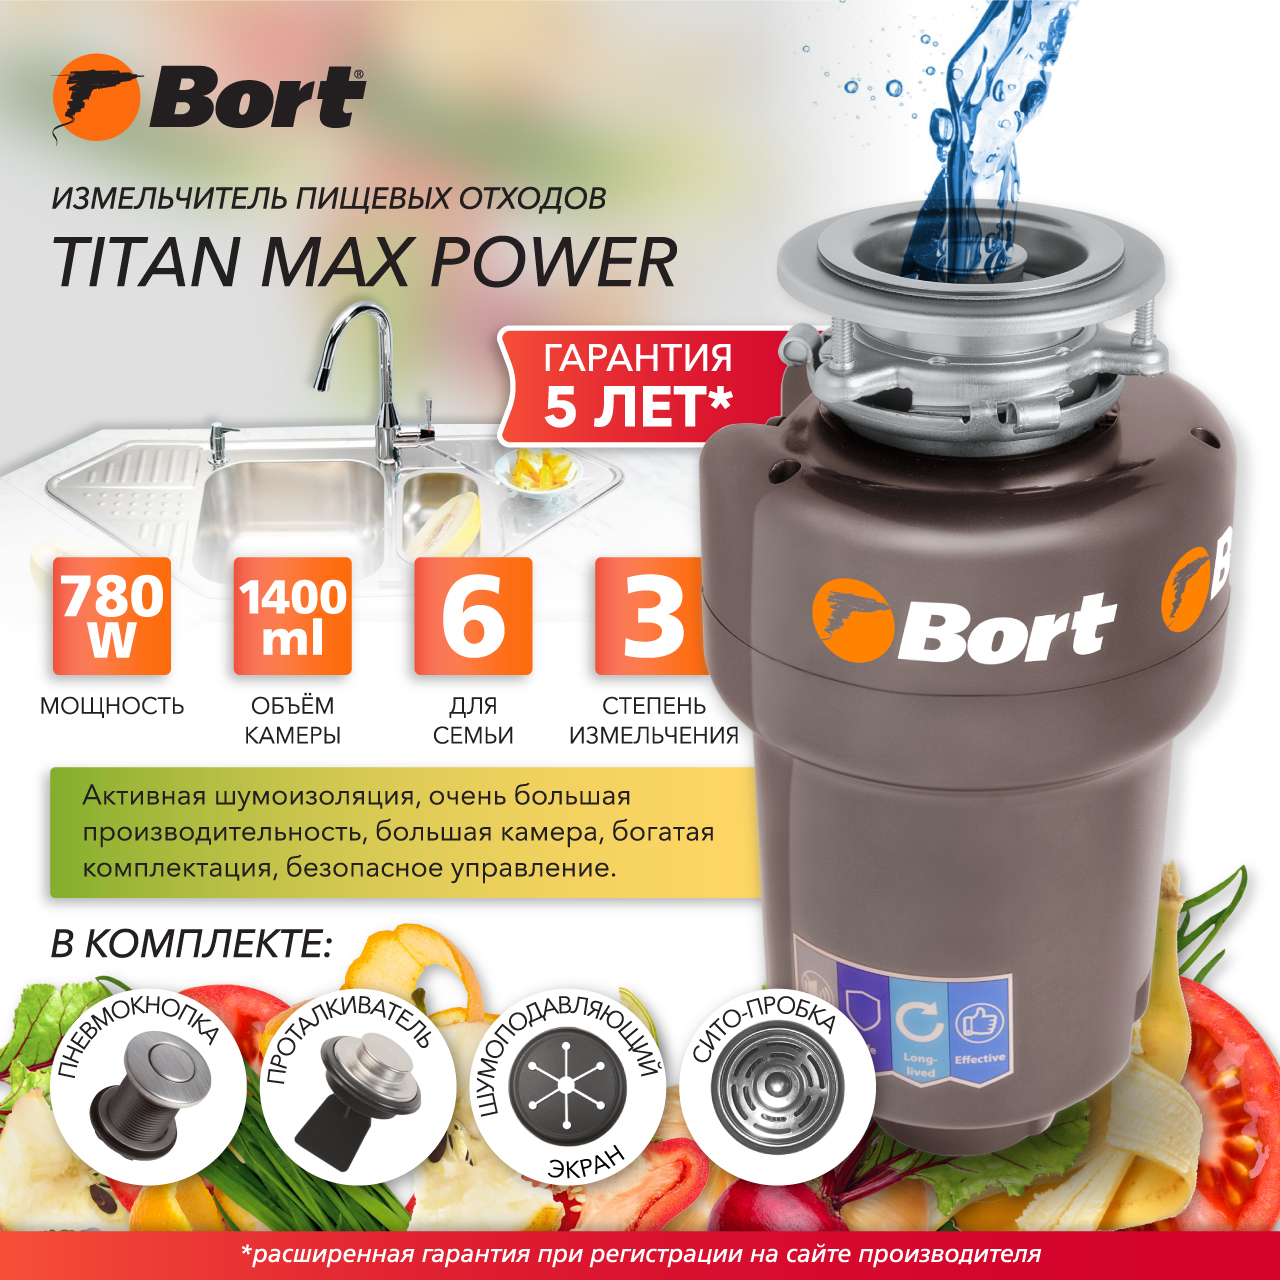 Измельчитель пищевых отходов Bort TITAN MAX POWER (91275790) серебристый гайковерт электрический 1 2 350нм 3300об мин 12v набор насадок кейс bort